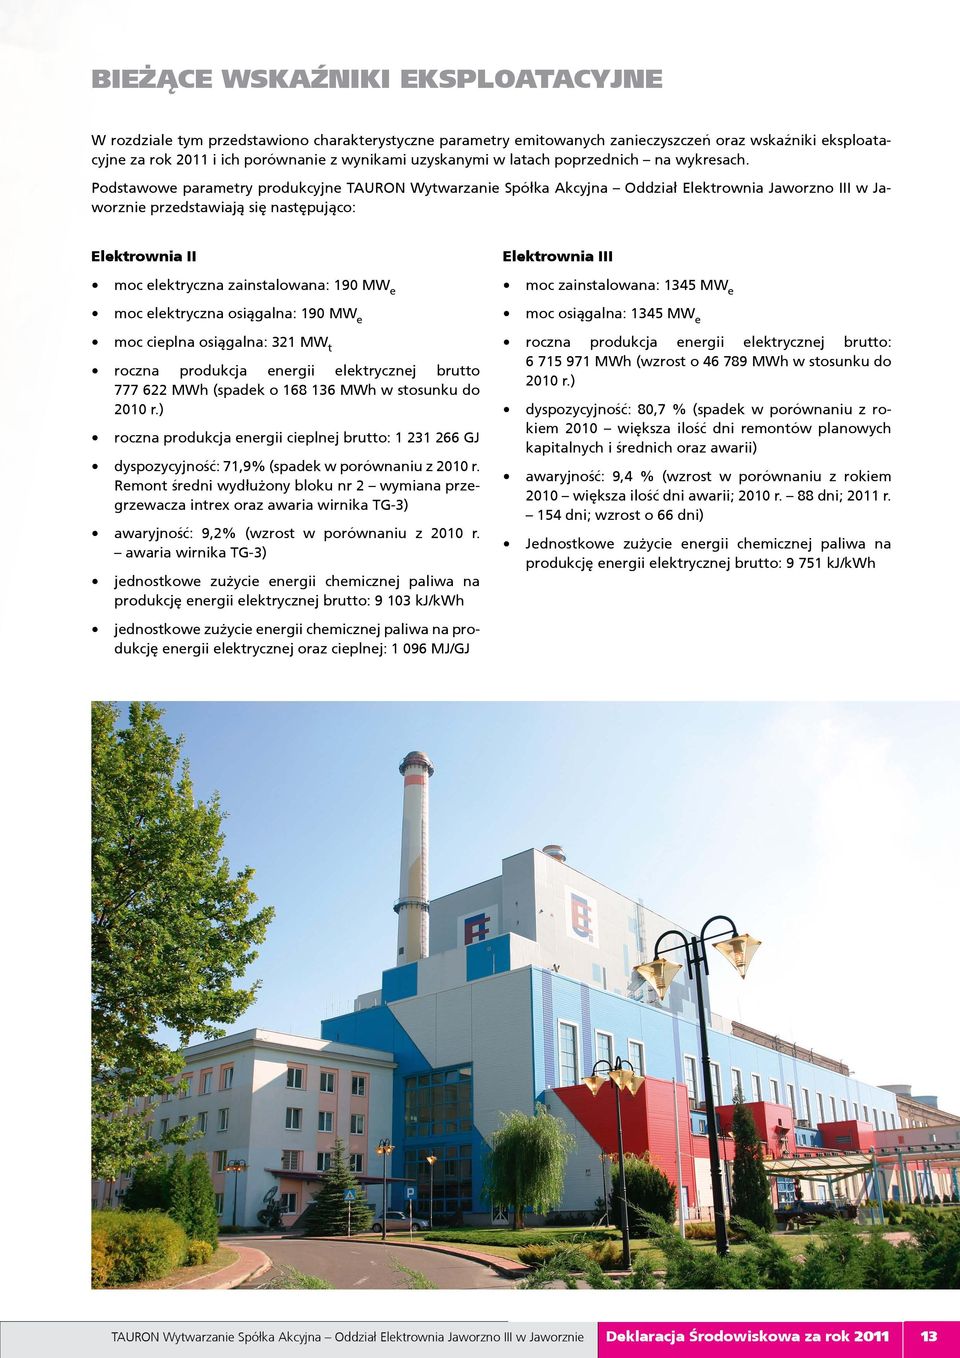 Podstawowe parametry produkcyjne TAURON Wytwarzanie Spółka Akcyjna Oddział Elektrownia Jaworzno III w Jaworznie przedstawiają się następująco: Elektrownia II moc elektryczna zainstalowana: 19 MW e